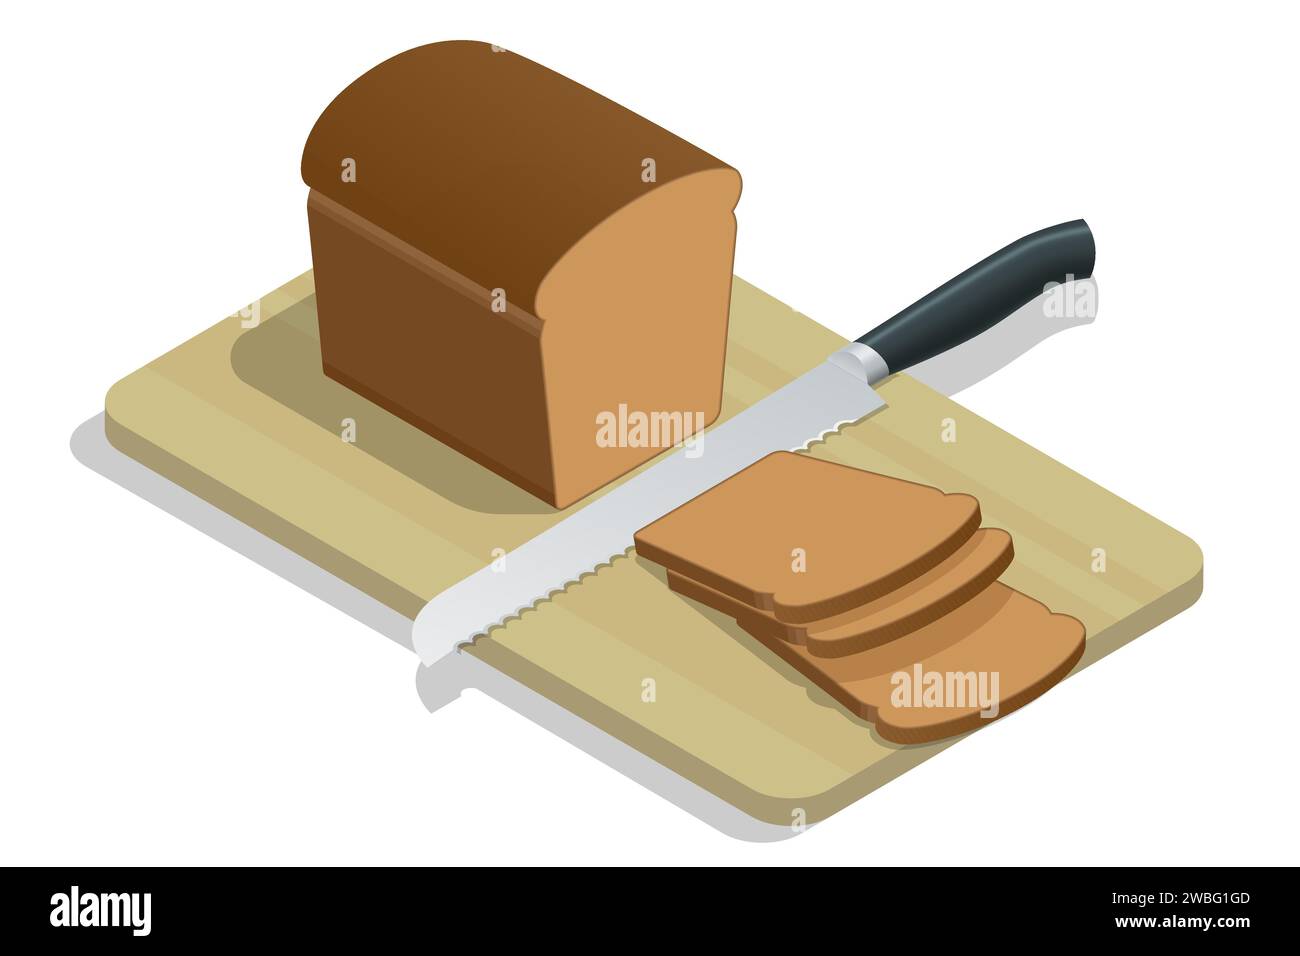 Pane fresco isometrico sul tavolo della cucina. Pane integrale. Pane fresco croccante tagliato a pezzi e un coltello. Illustrazione Vettoriale